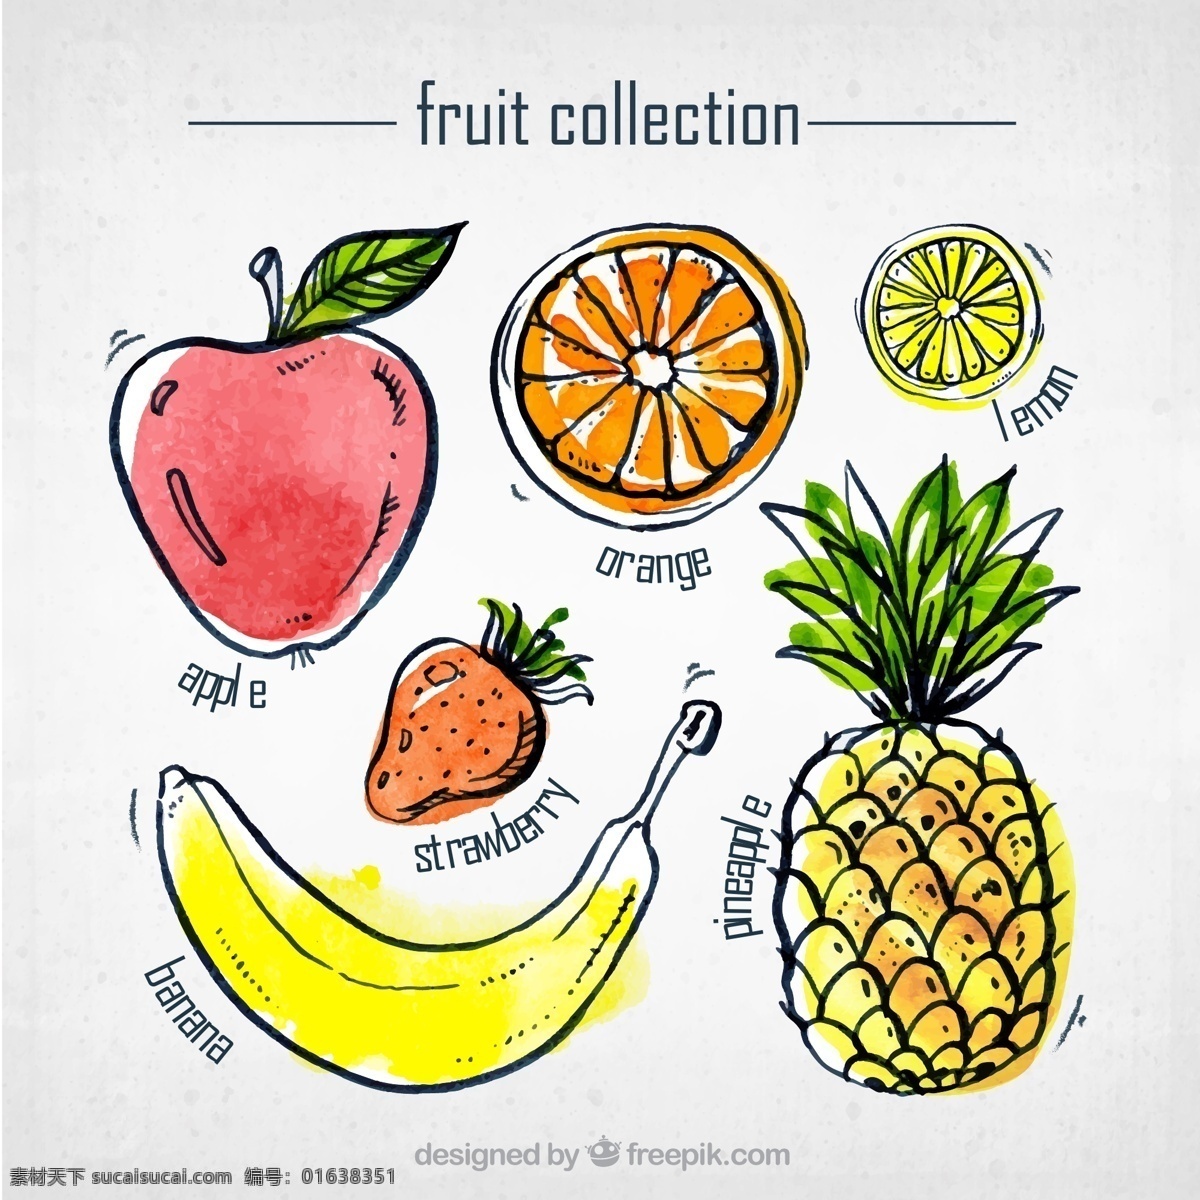 水墨 系列 手绘 水果 矢量图 水果手绘 橙子 草莓 菠萝 香蕉 柠檬 苹果 中国水墨 卡通设计